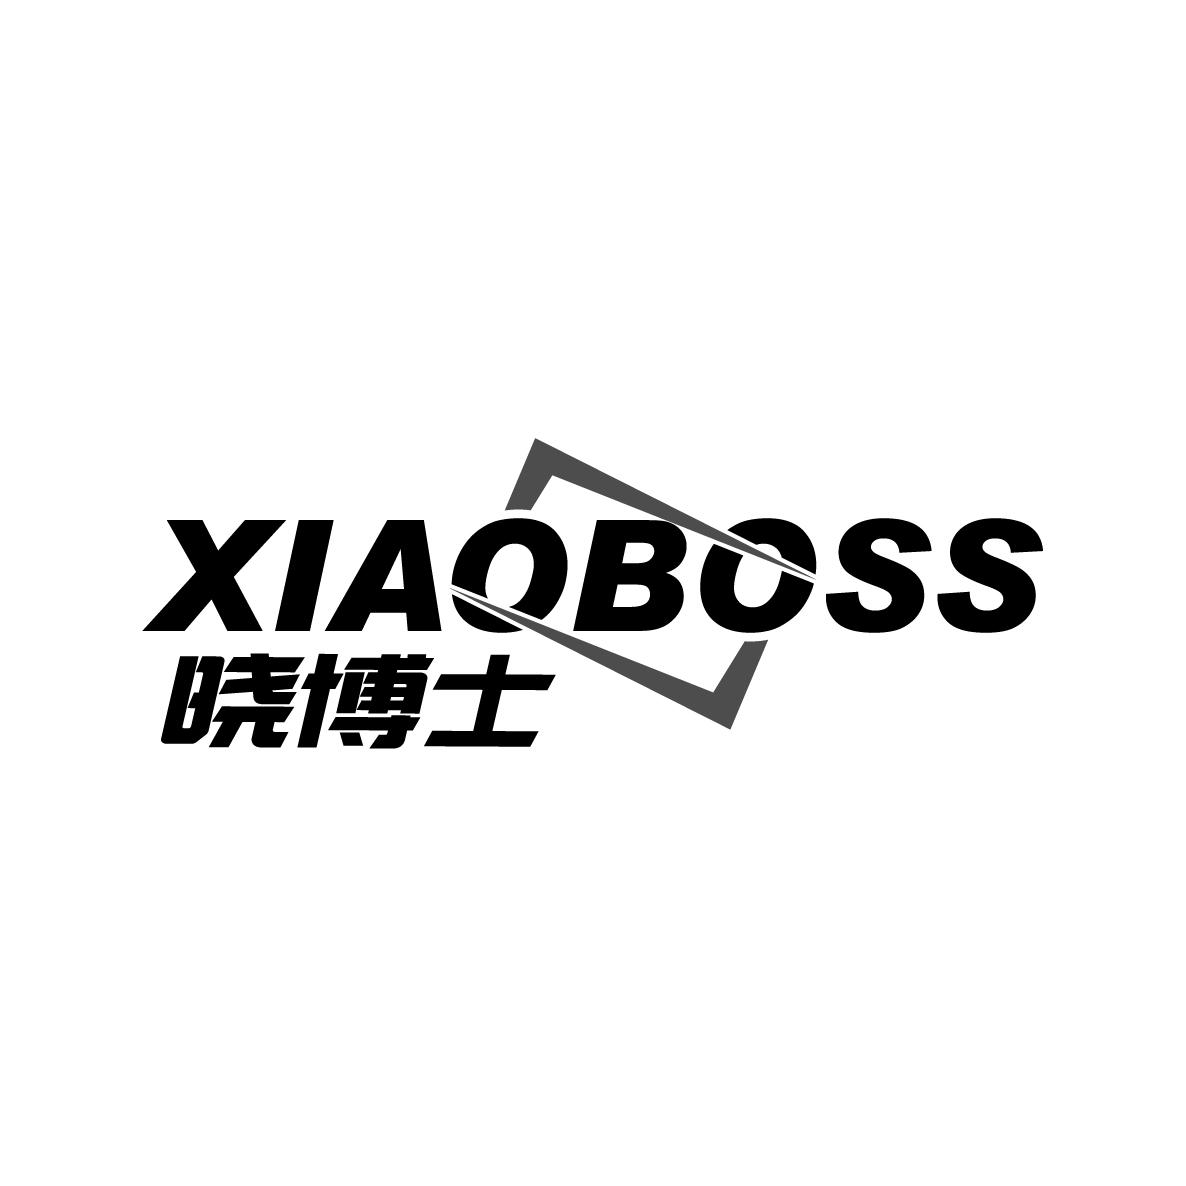 17类-橡胶石棉晓博士 XIAOBOSS商标转让